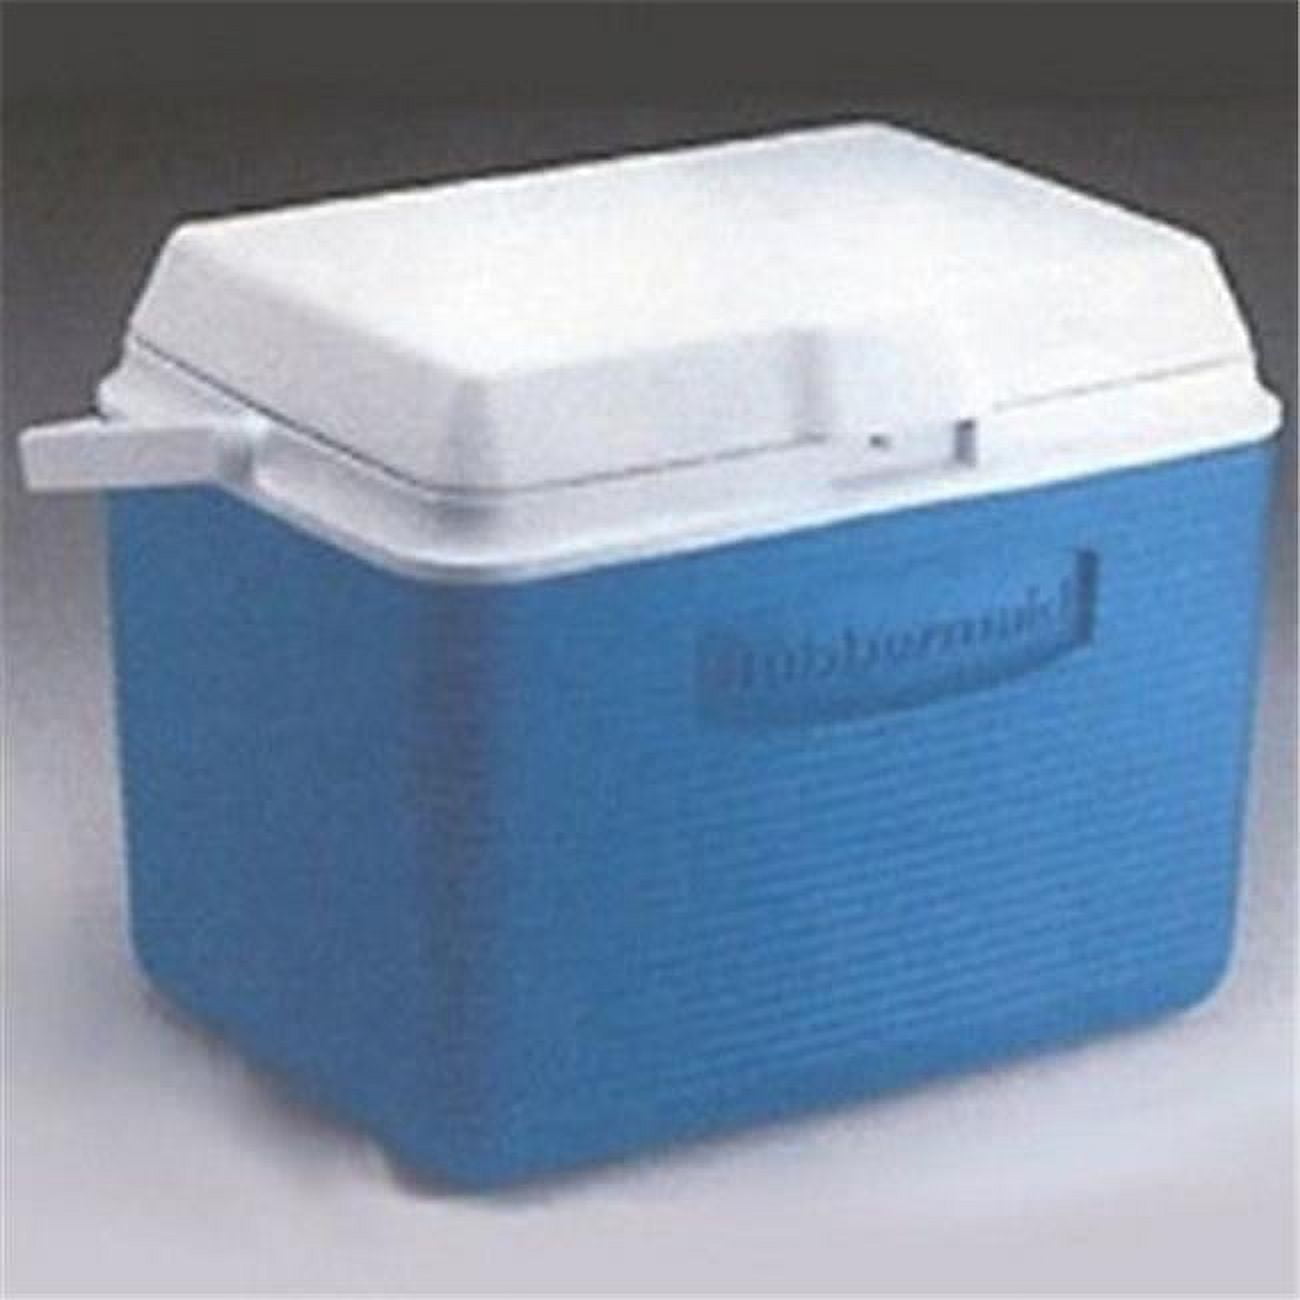 Rubbermaid 50 Qt. Cooler – Arco Contractors Supply